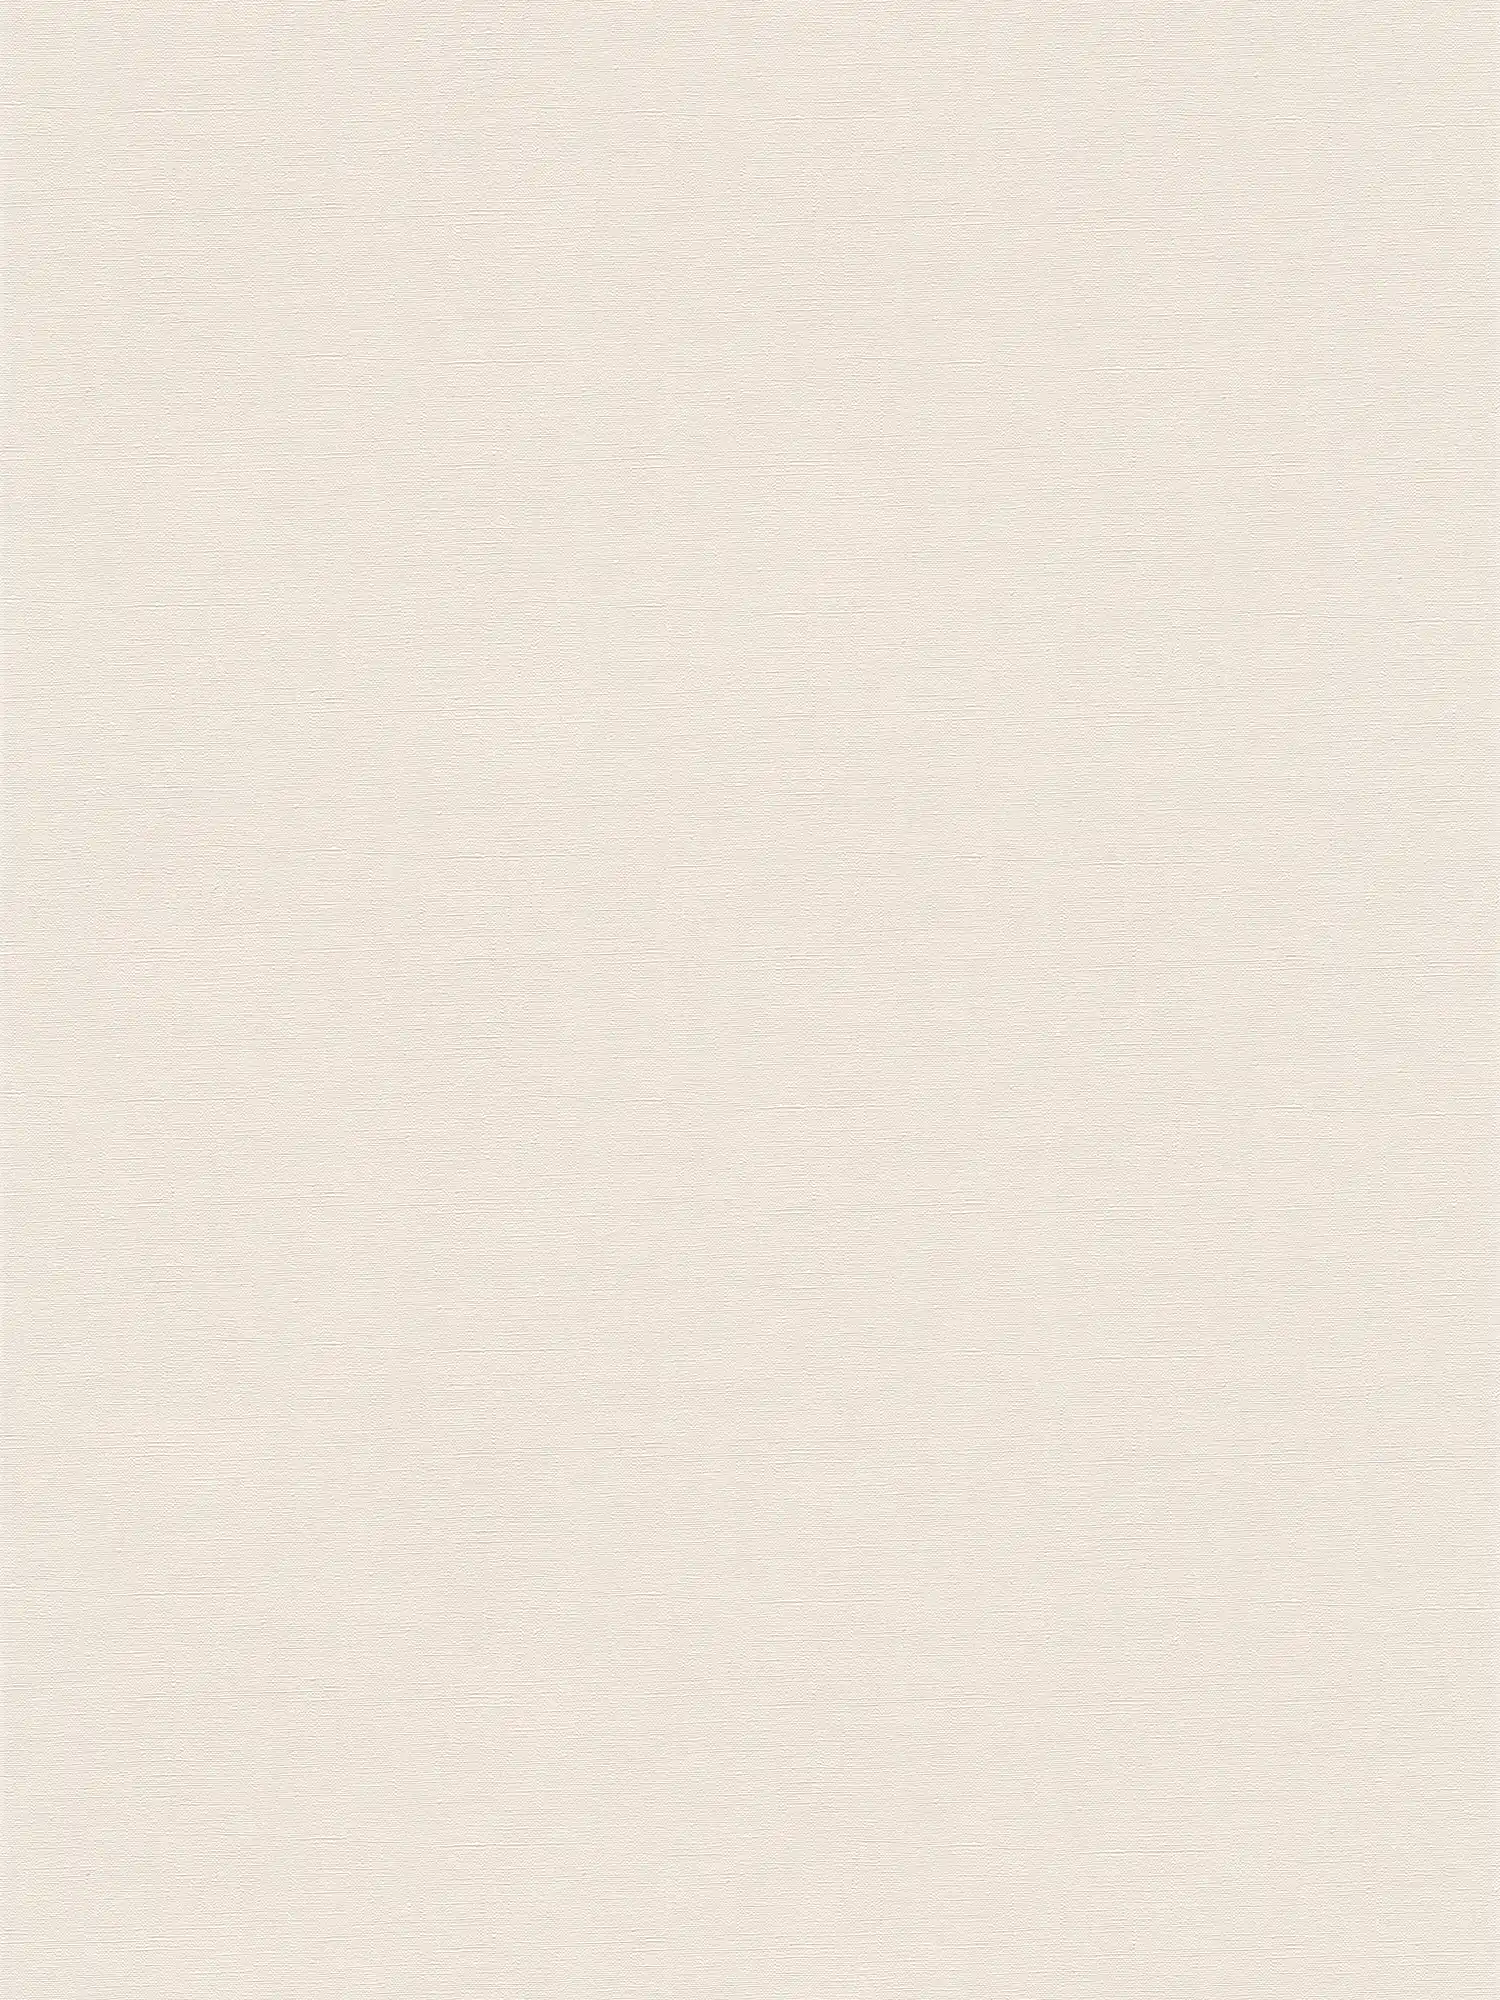 Non-woven wallpaper plain with light sheen - beige, cream
